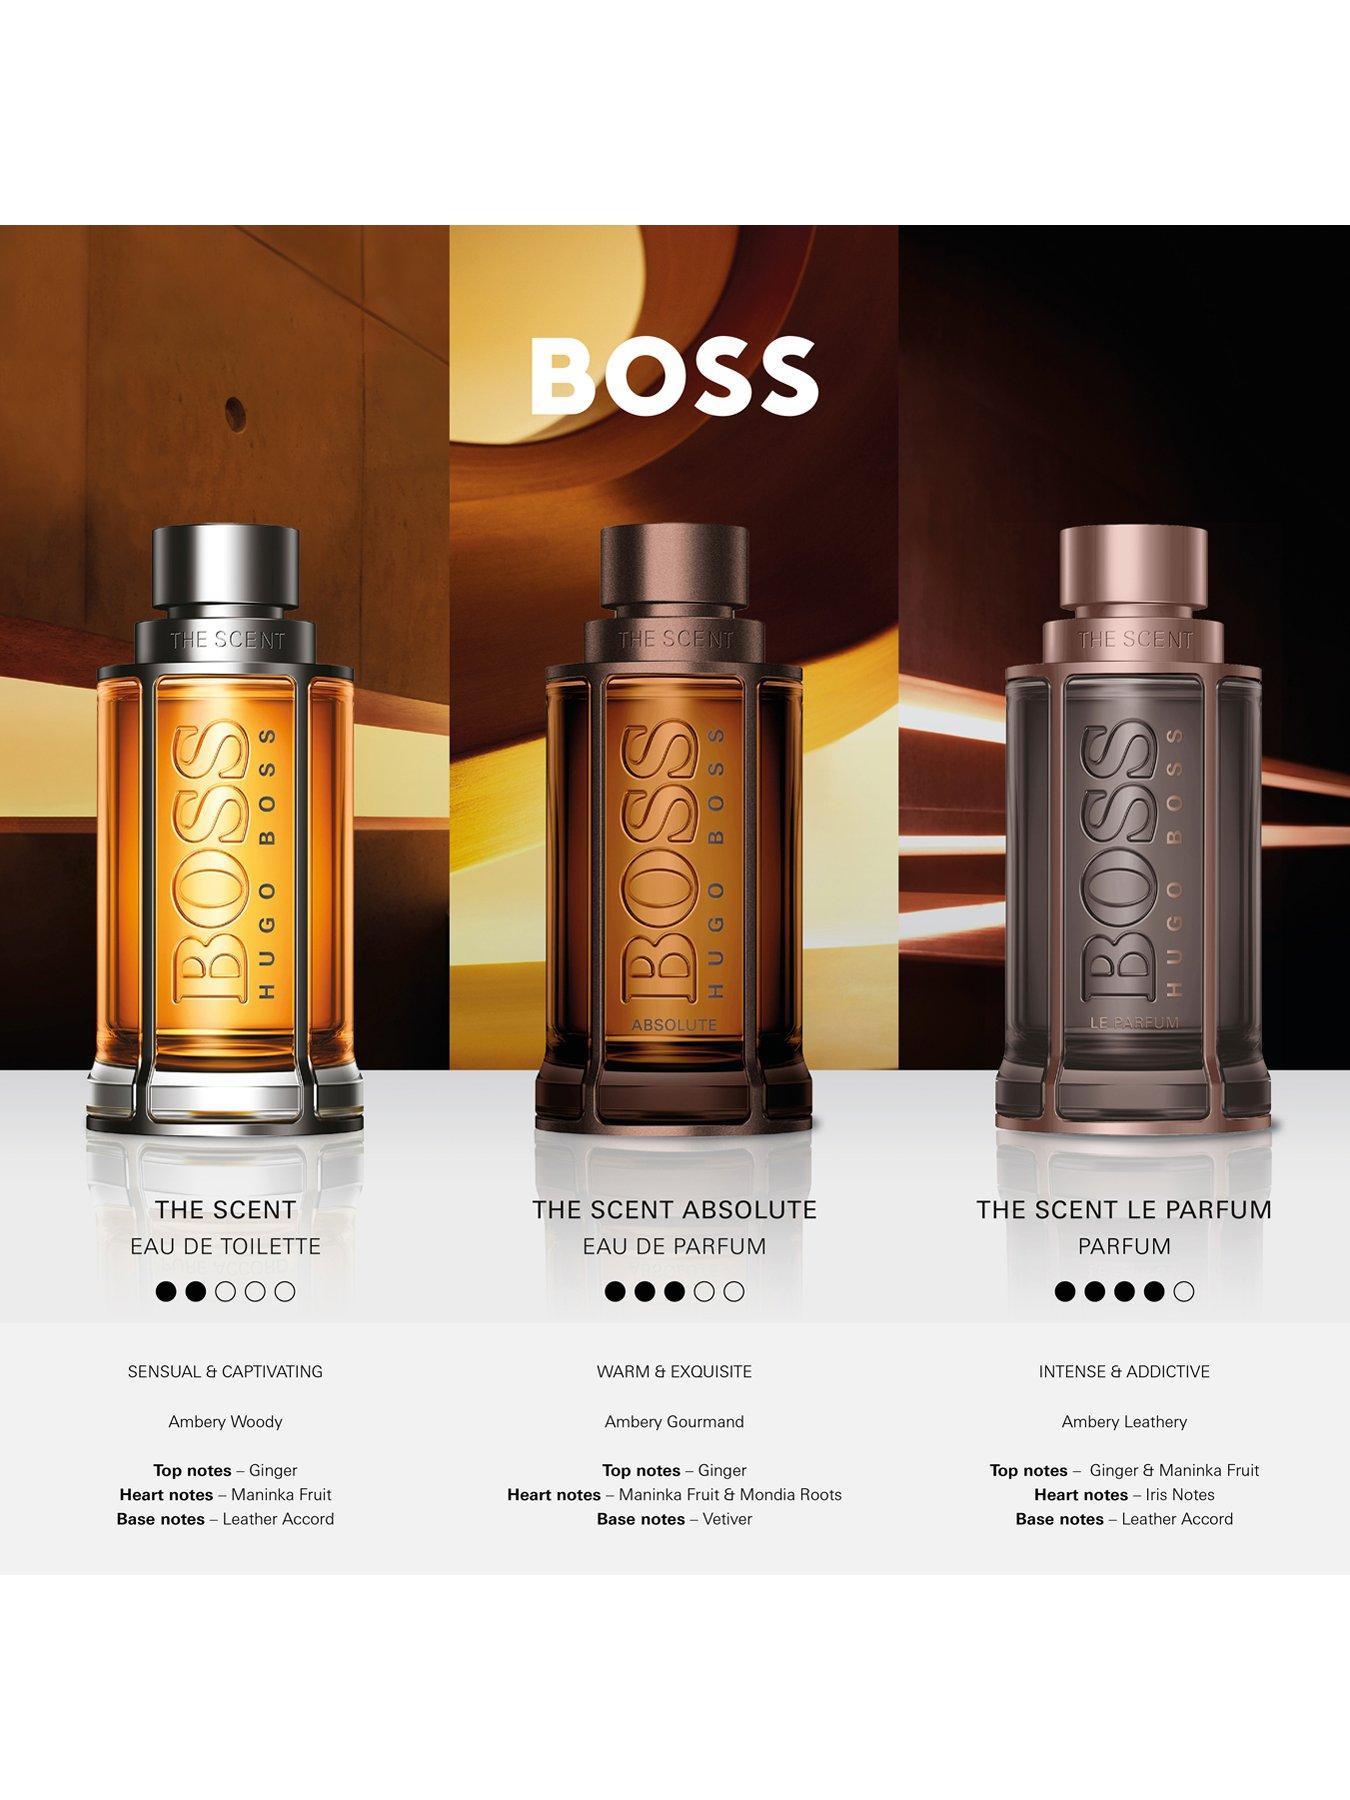 BOSS The Scent Absolute For Men Eau De Parfum, 100ml: Buy Online At ...